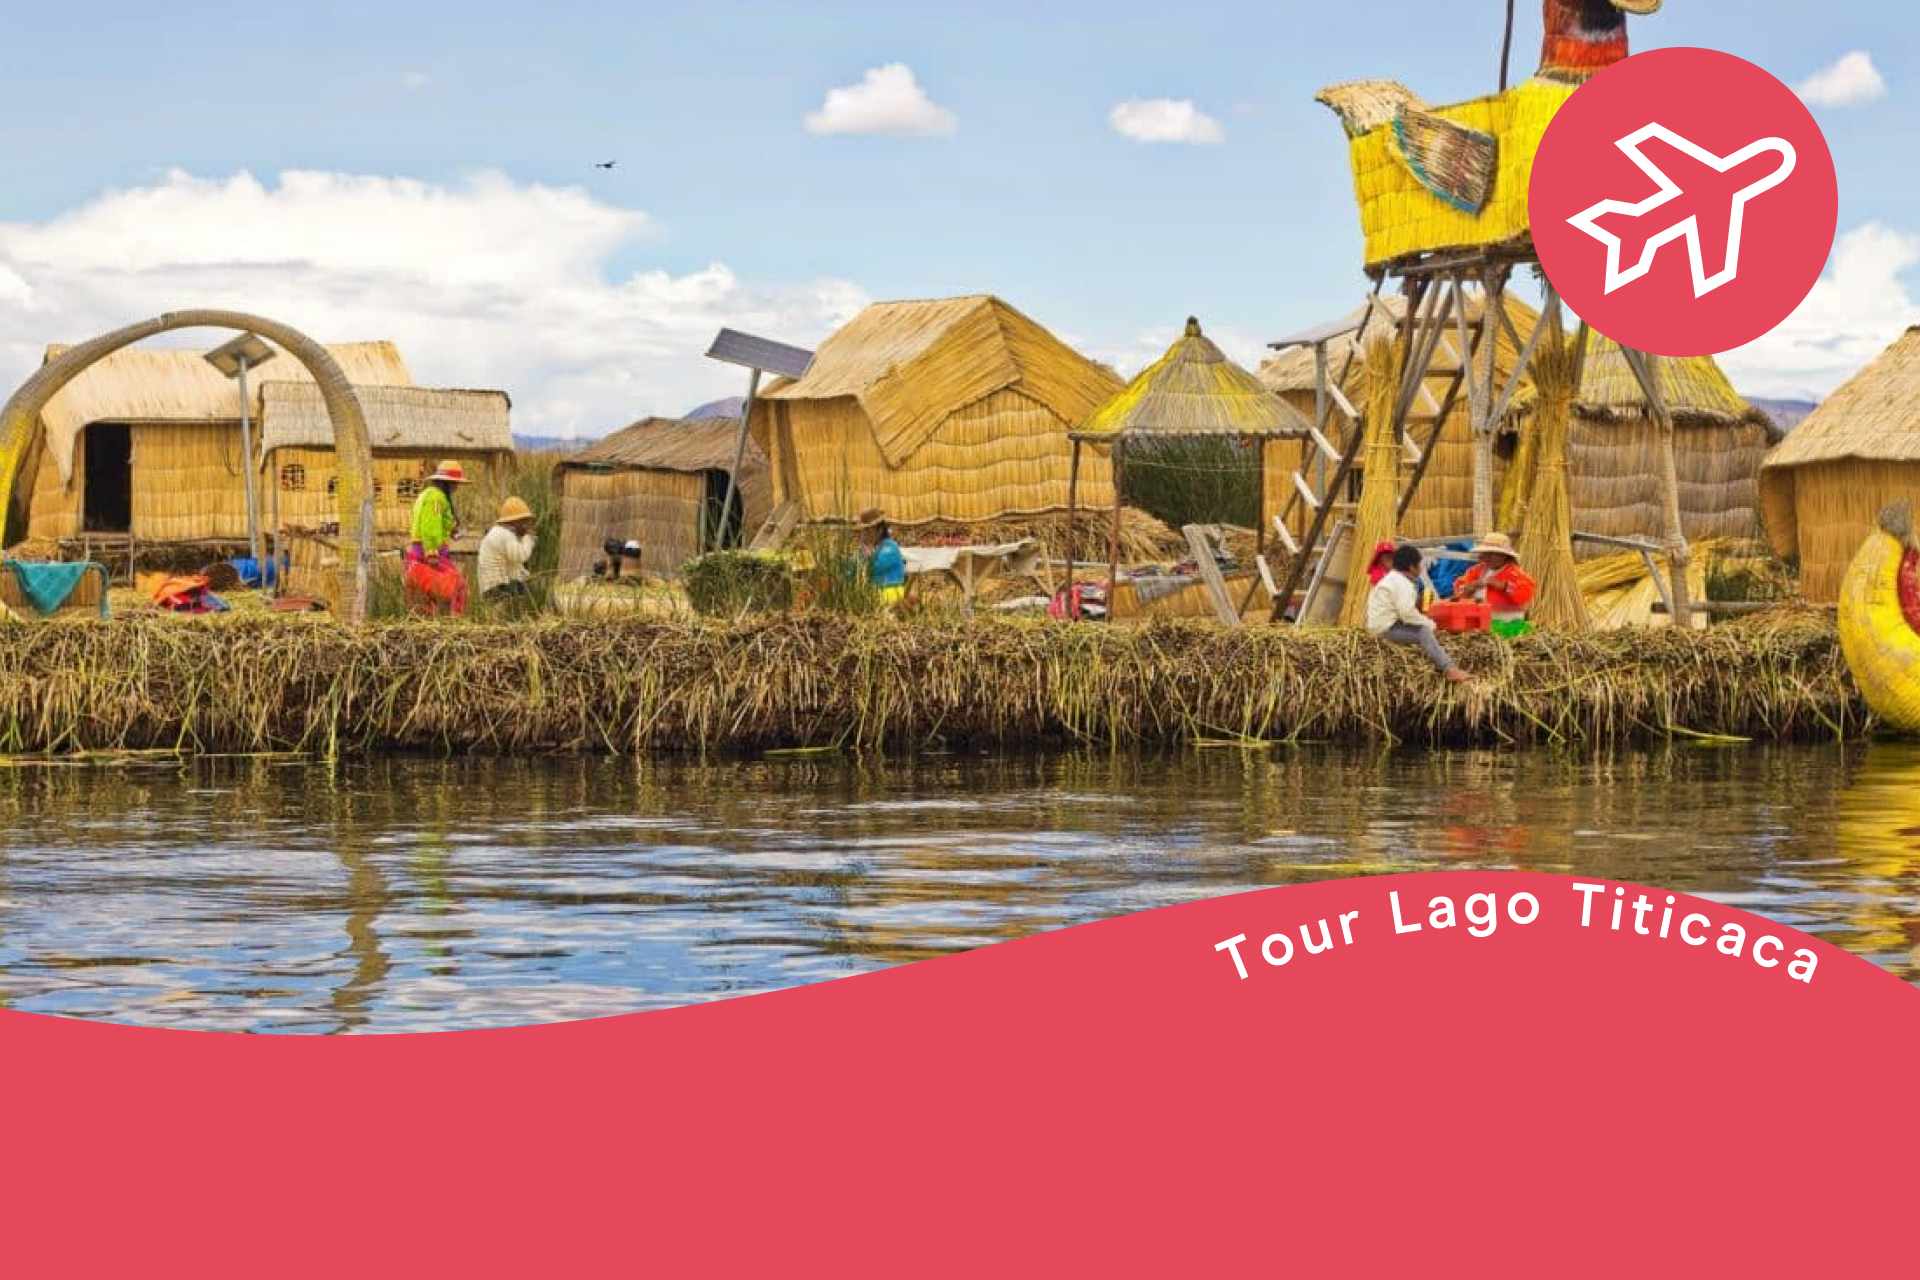 lago titicaca tour